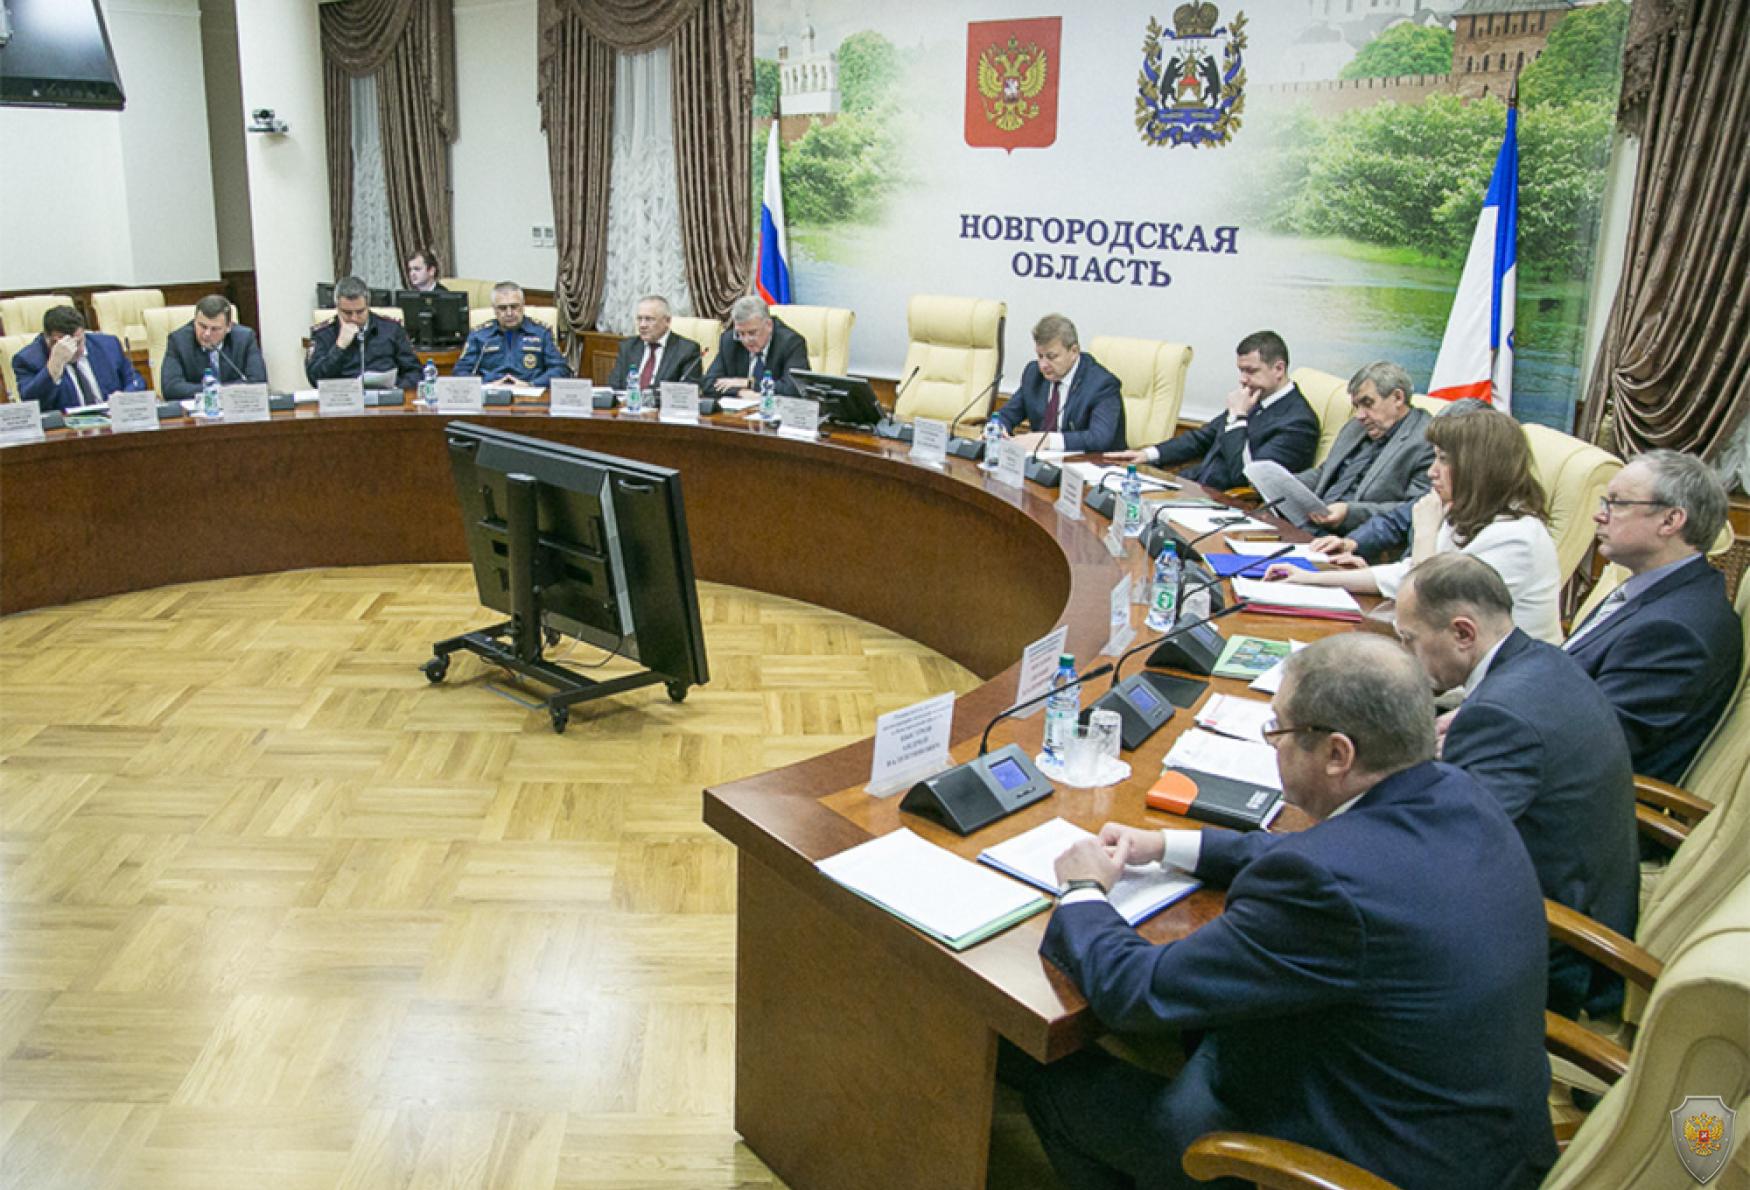 Заседание антитеррористической комиссии  в Новгородской области 